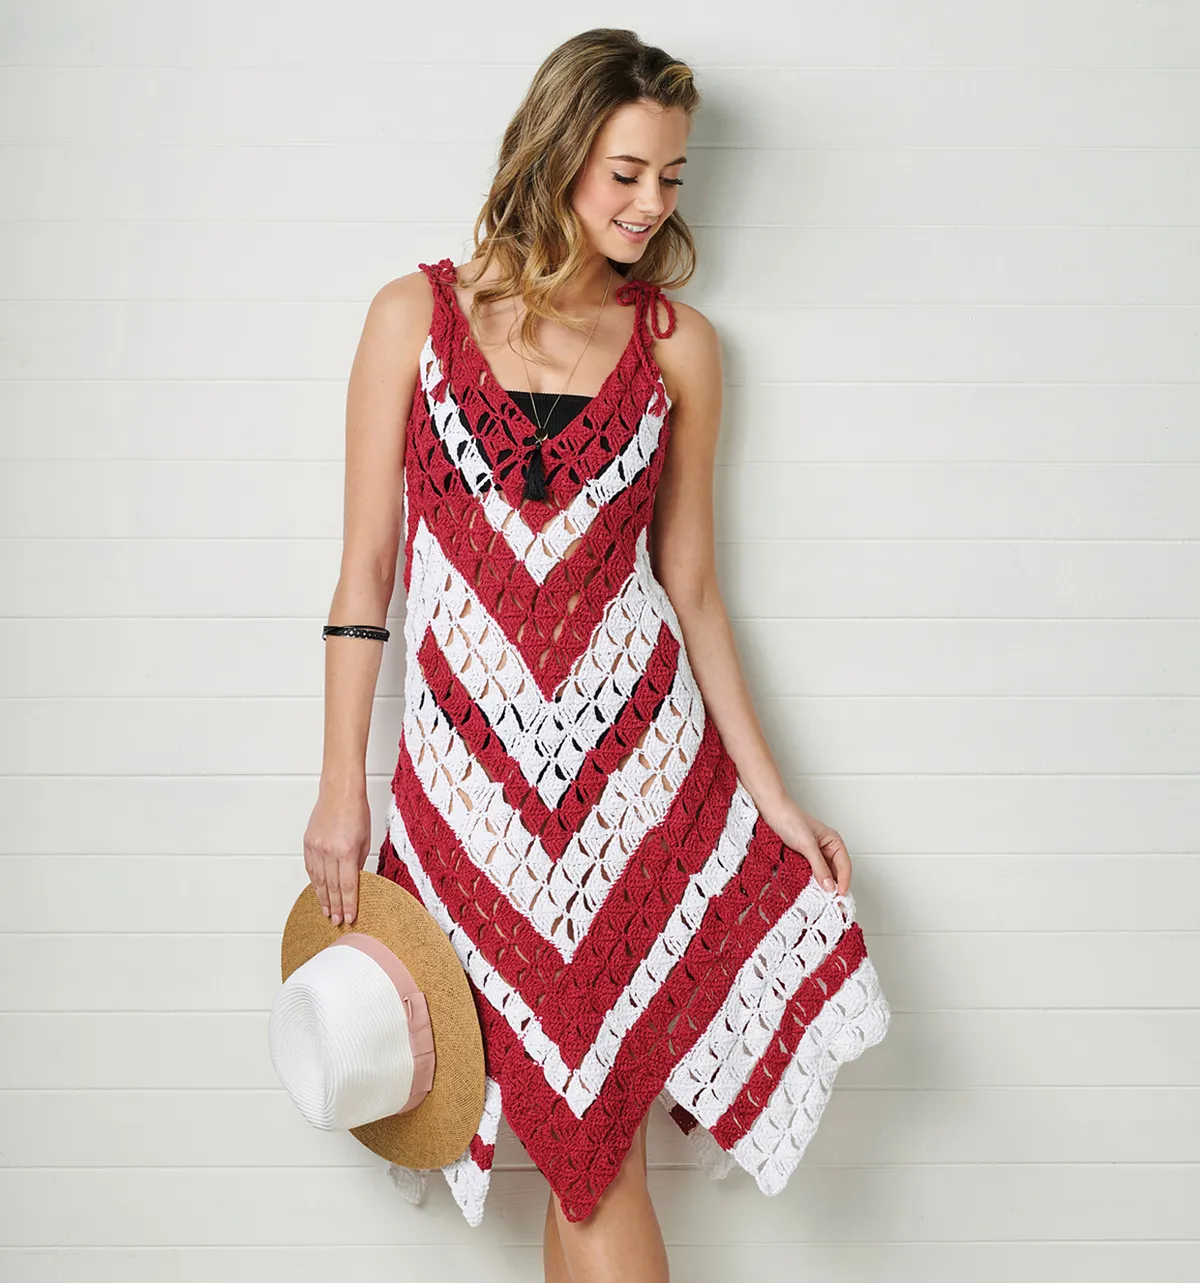 Candy cane beach dress crochet pattern